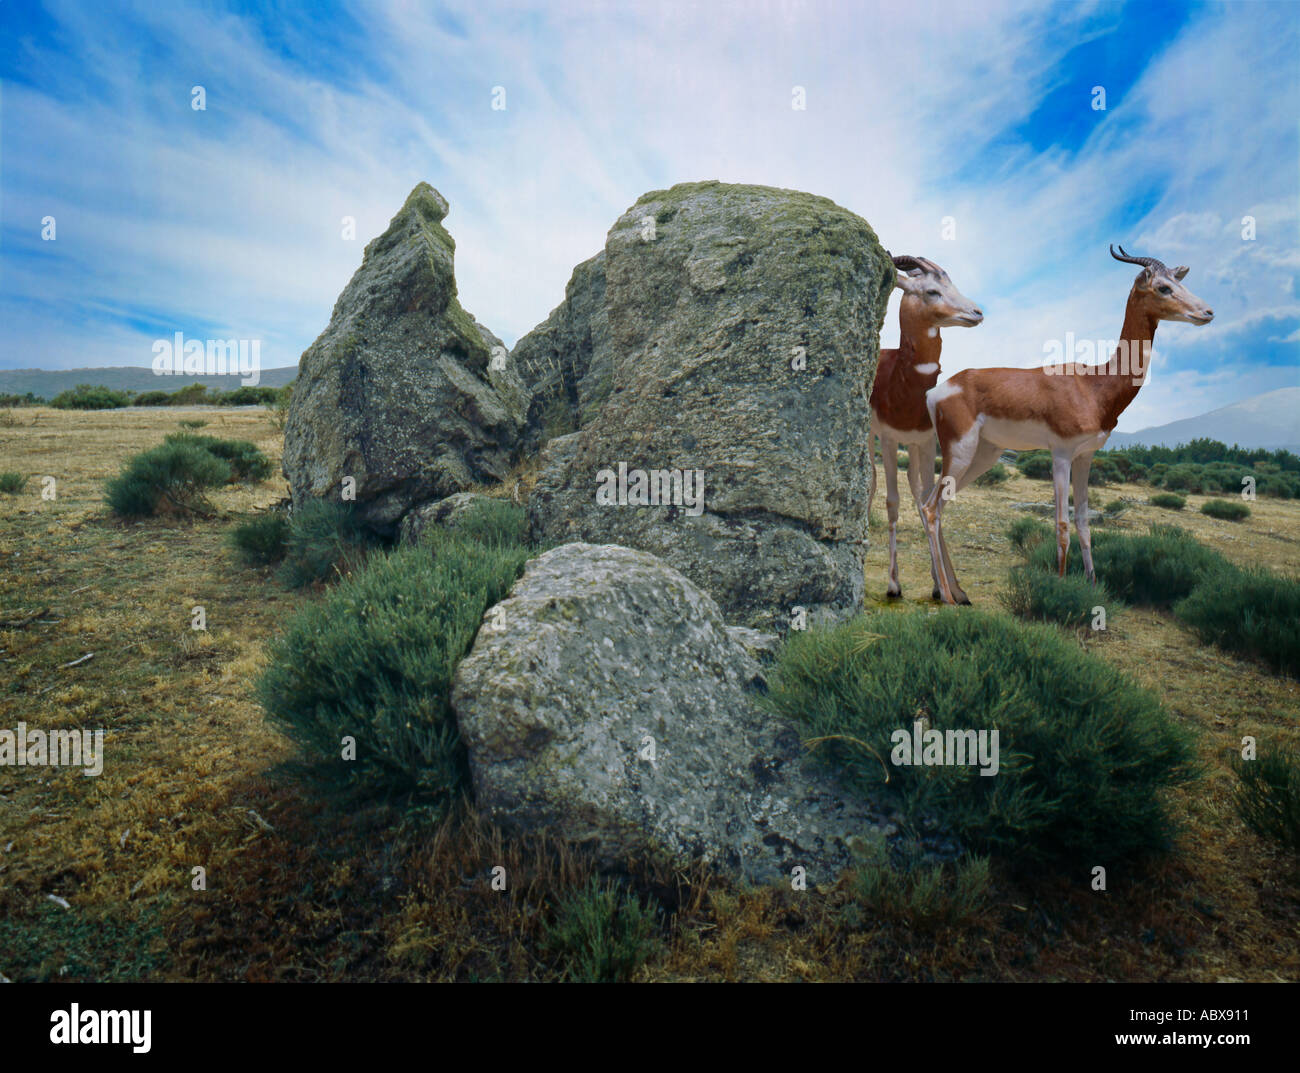 Gazelles in landscape, Stock Photo